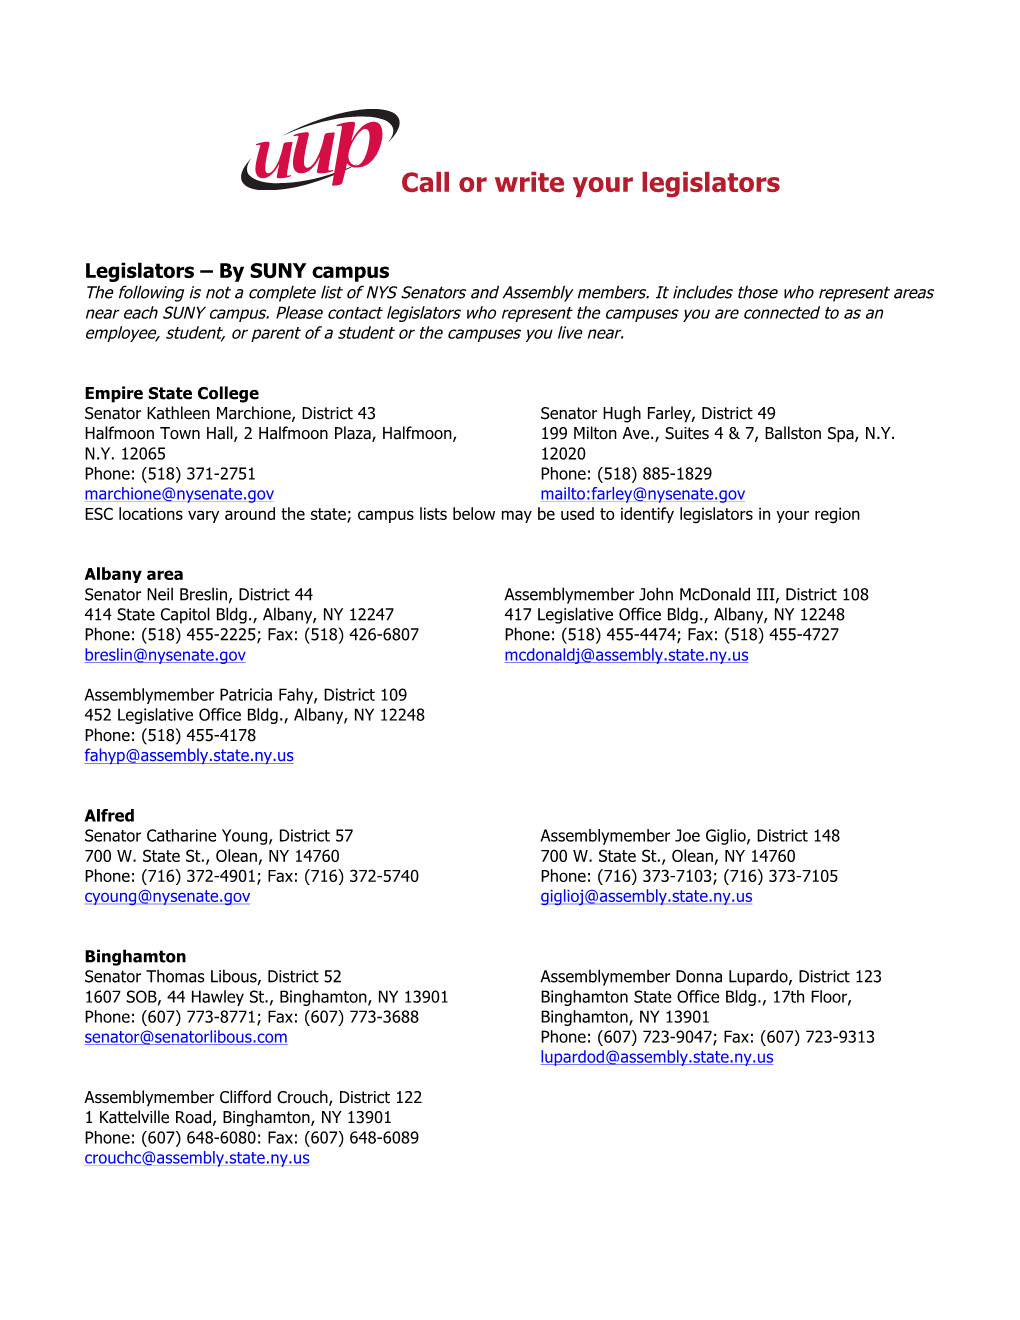 Call Or Write Your Legislators